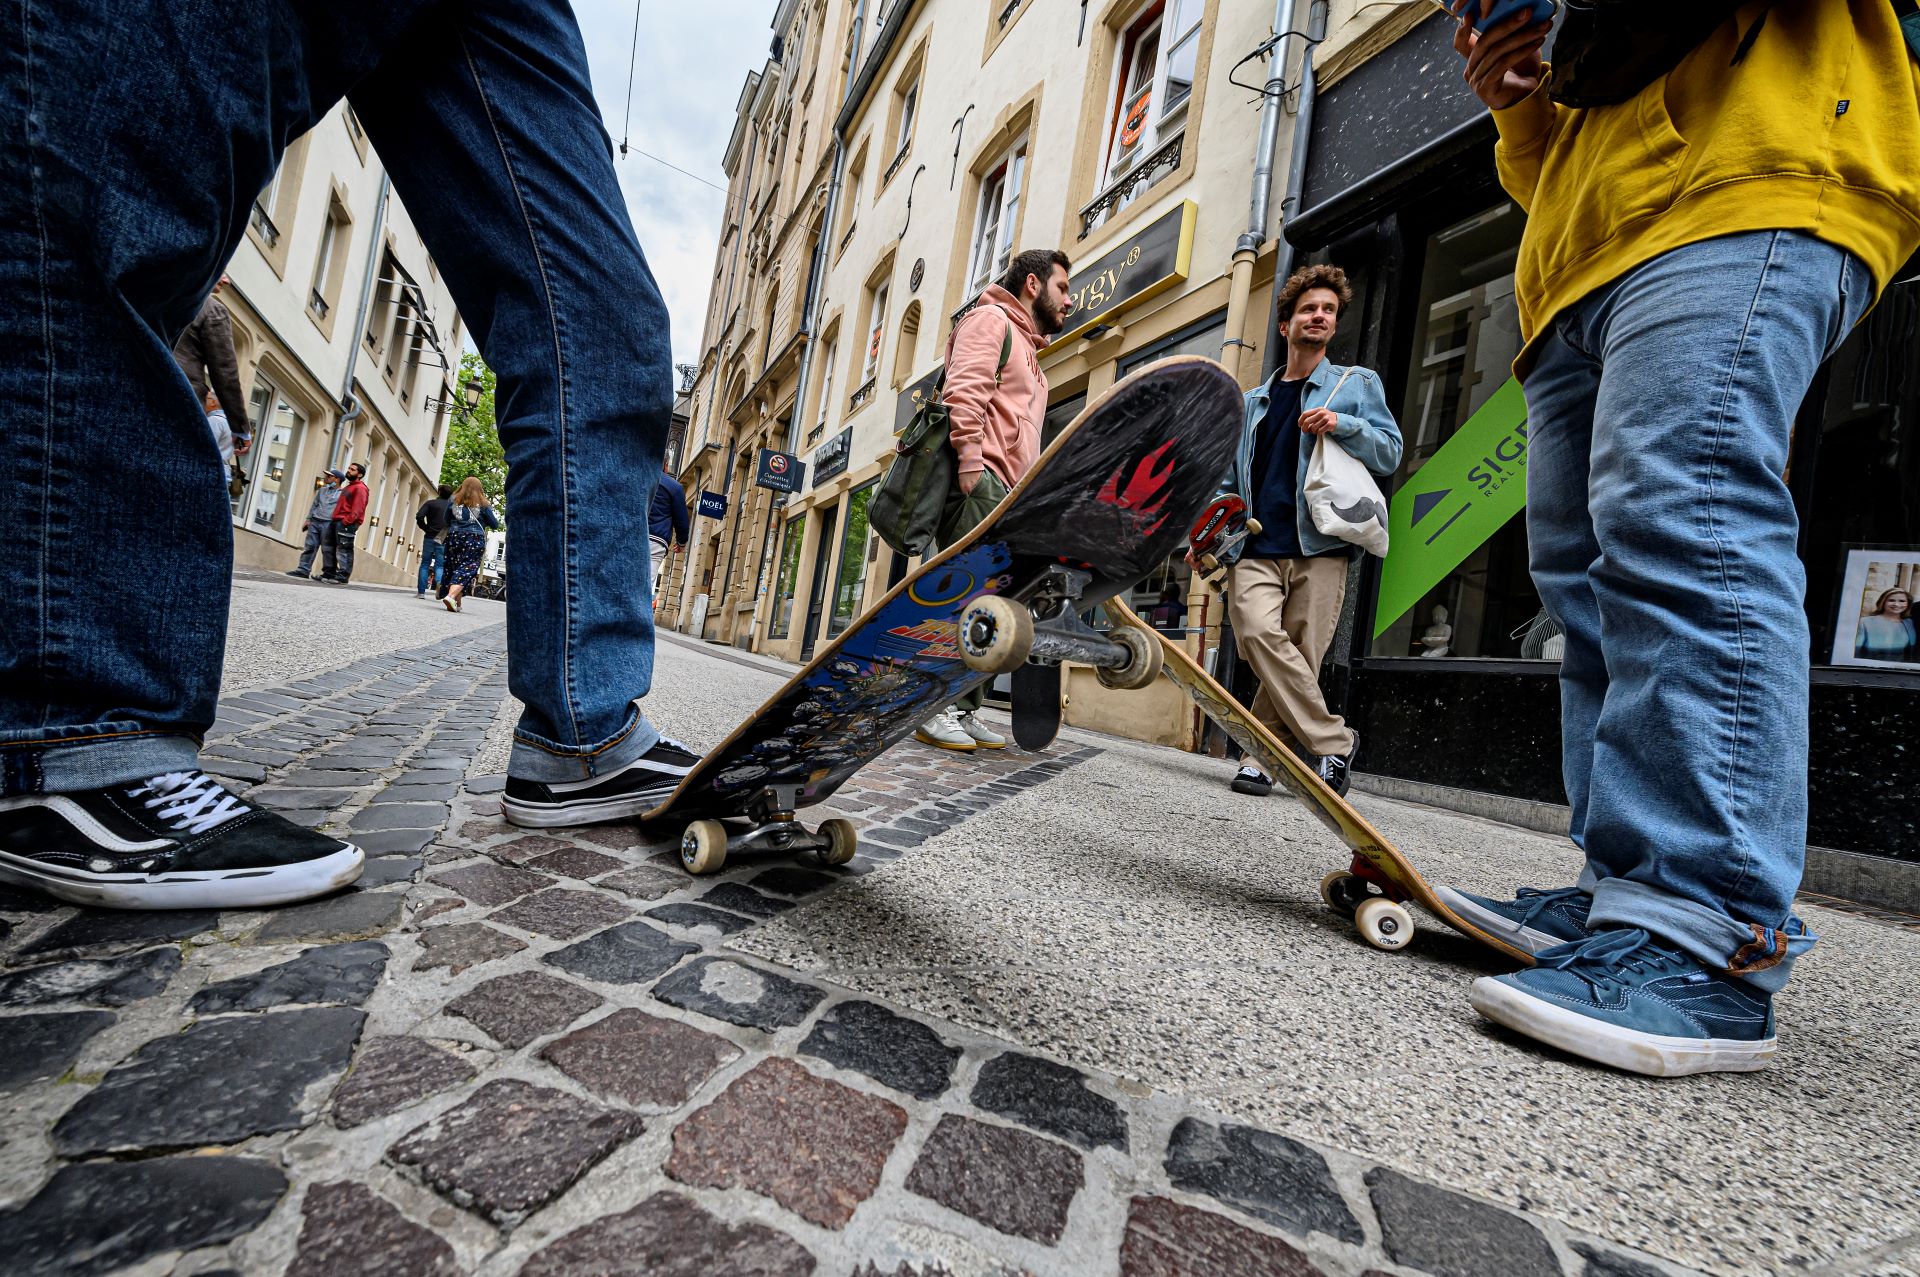 Des skateurs discutent dans une rue du centre ville de Luxembourg. Deux d'entre eux sont hors champ, mais on peut voir leurs skateboards au premier plan.